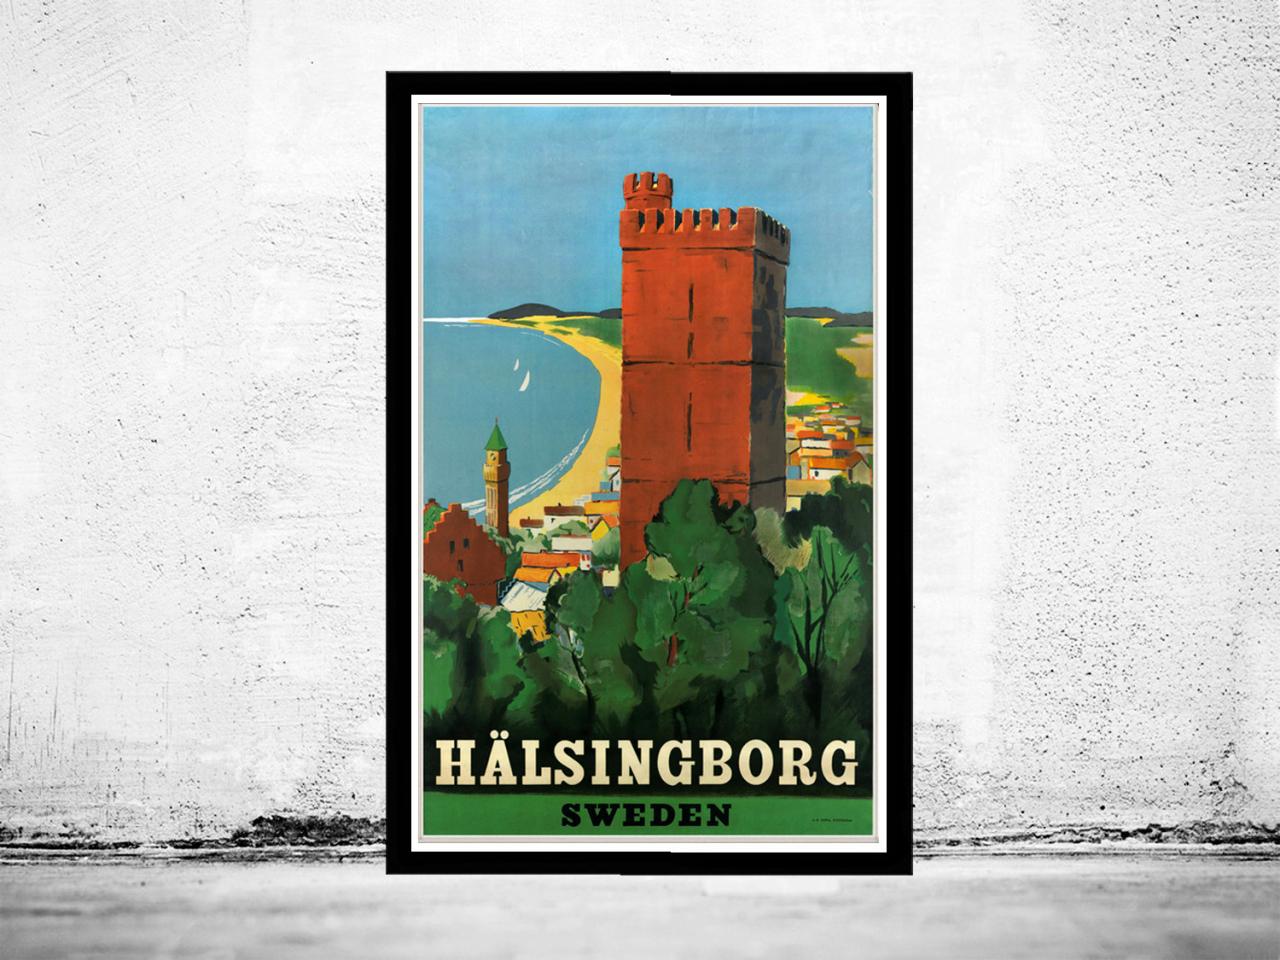 Vintage Poster Of Halsingborg Sweden 1930 -1940 Tourism Poster Travel